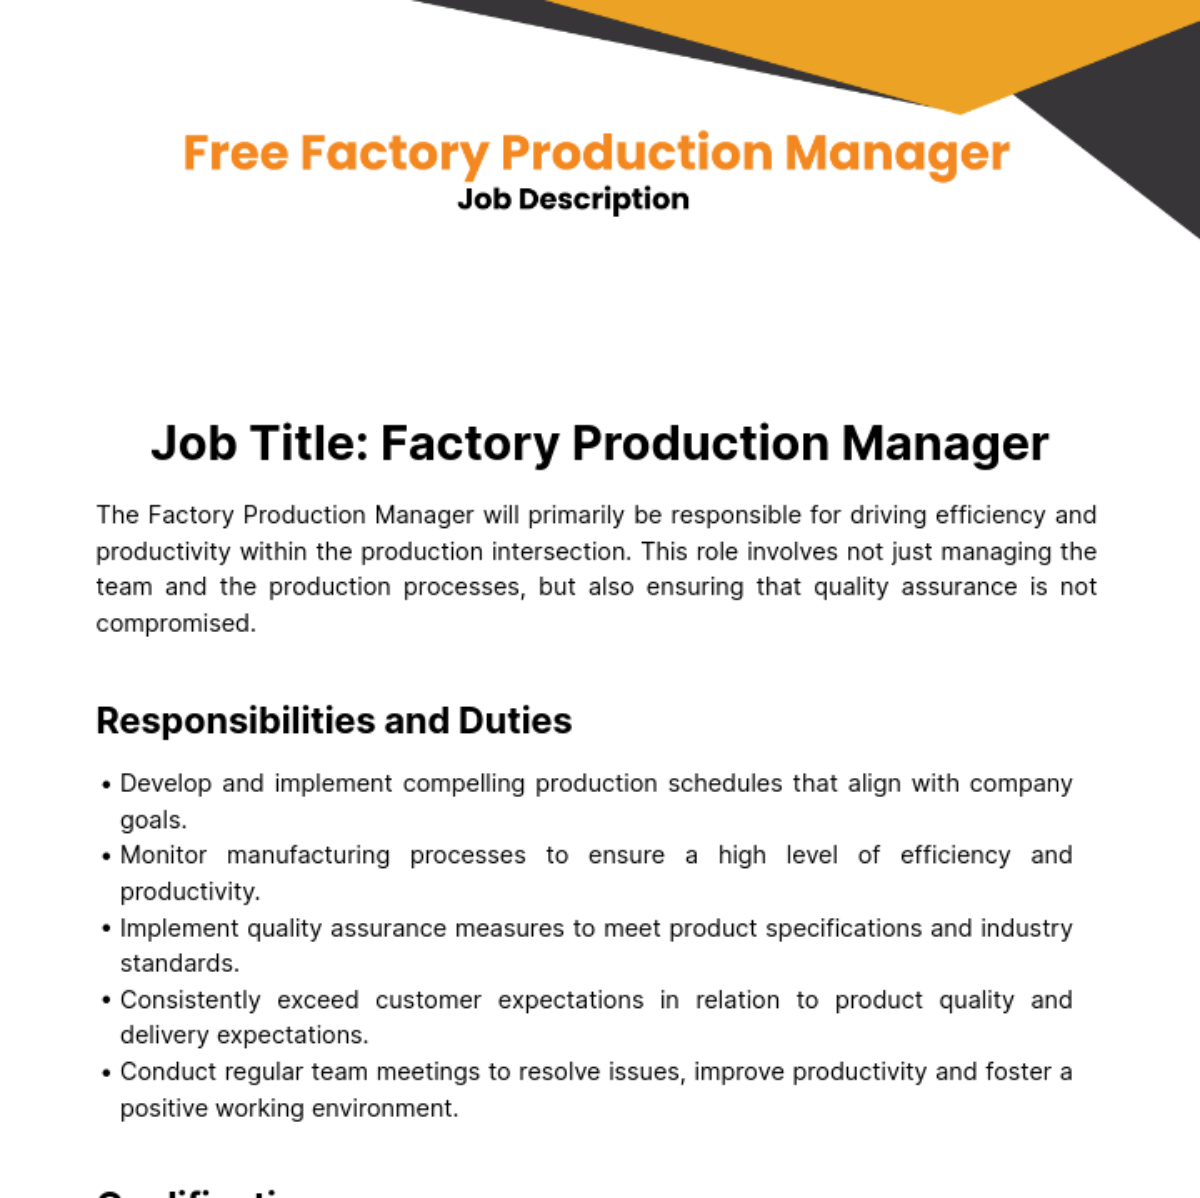 Factory Production Manager Job Description Template